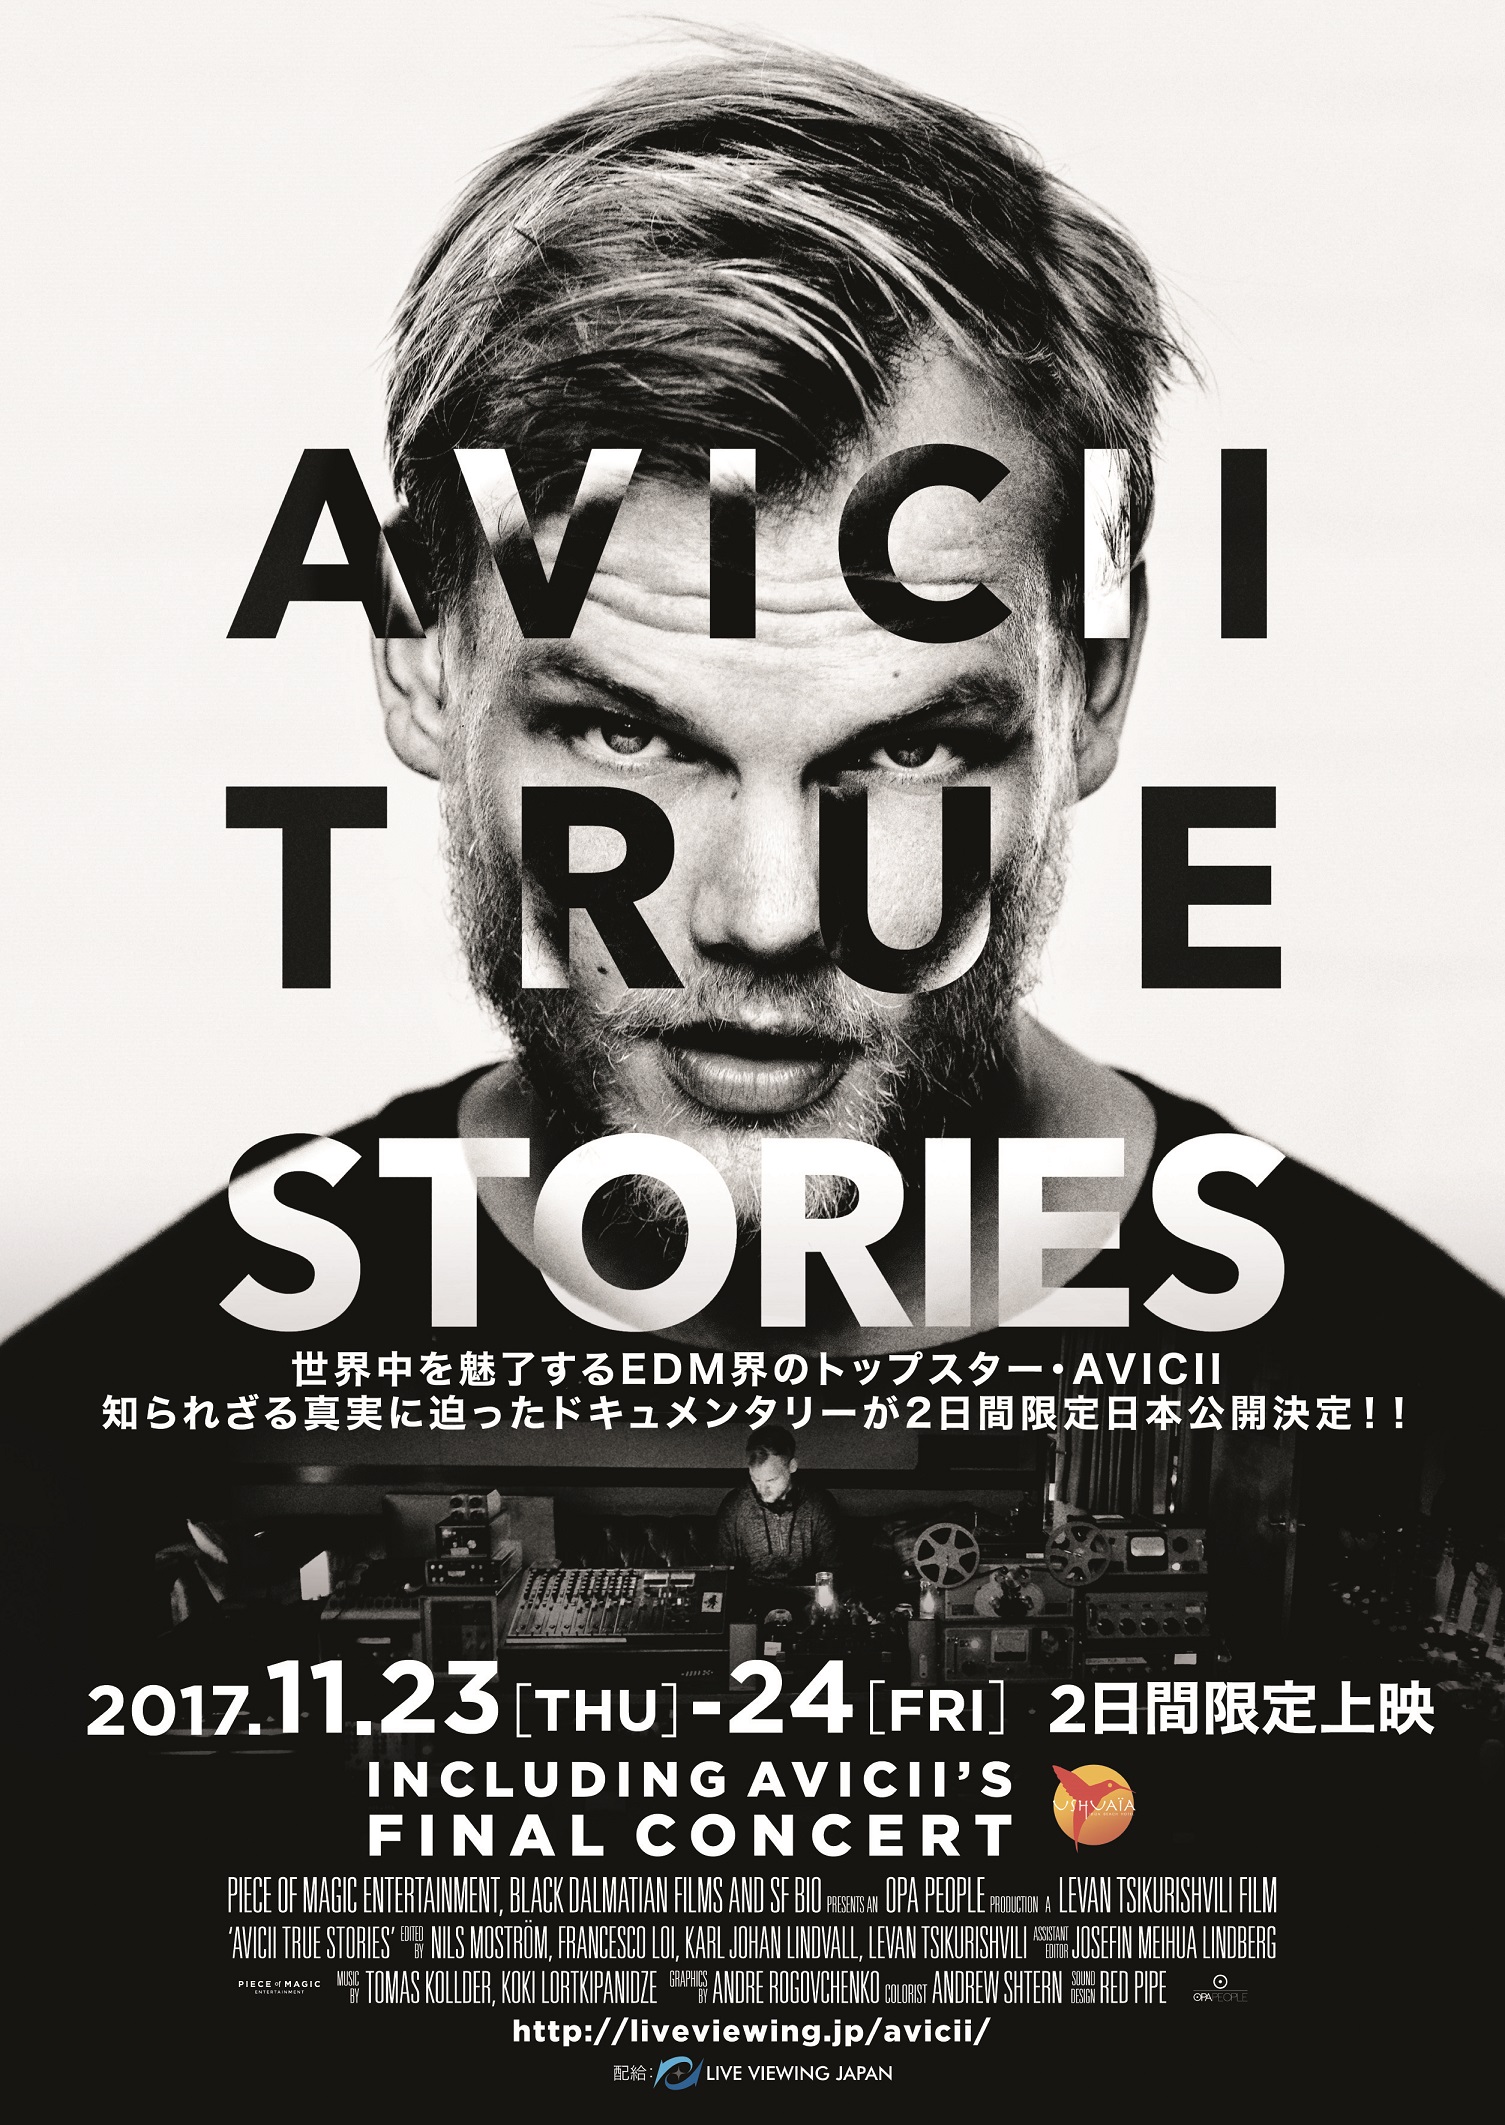 世界中を魅了するedm界のトップスター Avicii知られざる真実に迫ったドキュメンタリー Avicii True Stories が2日間限定日本公開決定 ライブ ビューイング ジャパンのプレスリリース